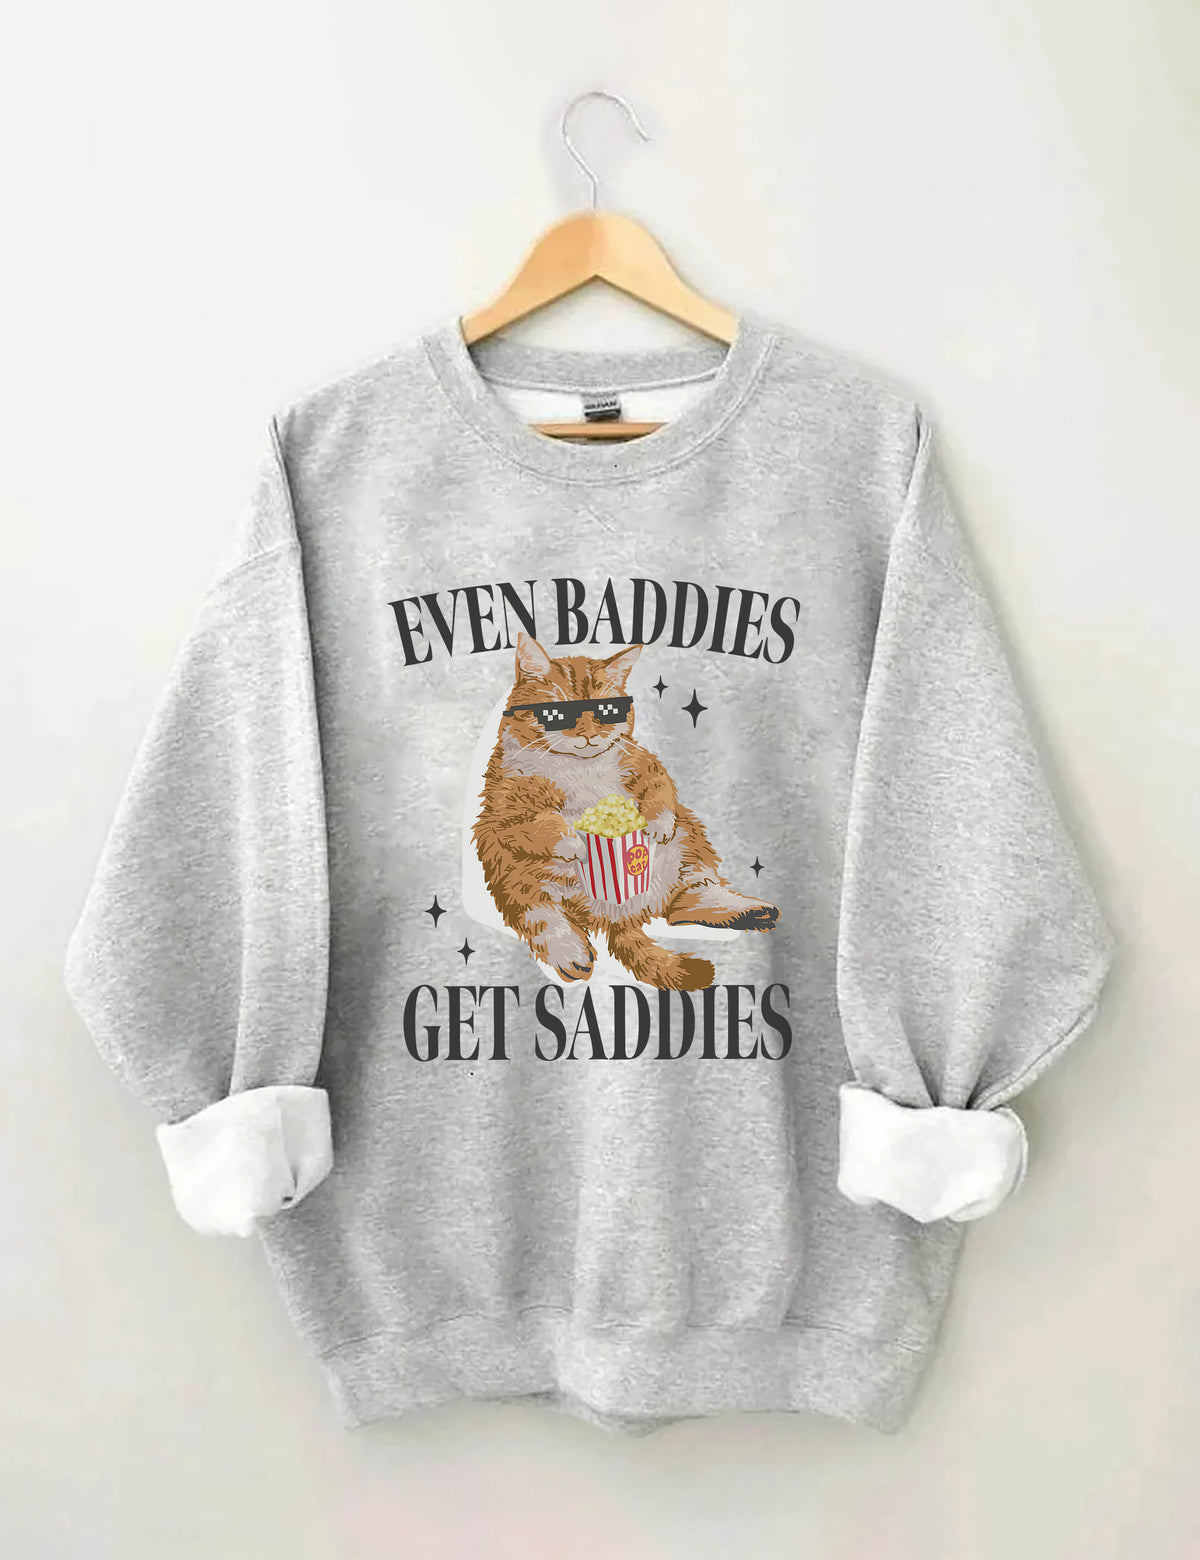 Even Baddies Get Saddies Sweatshirt